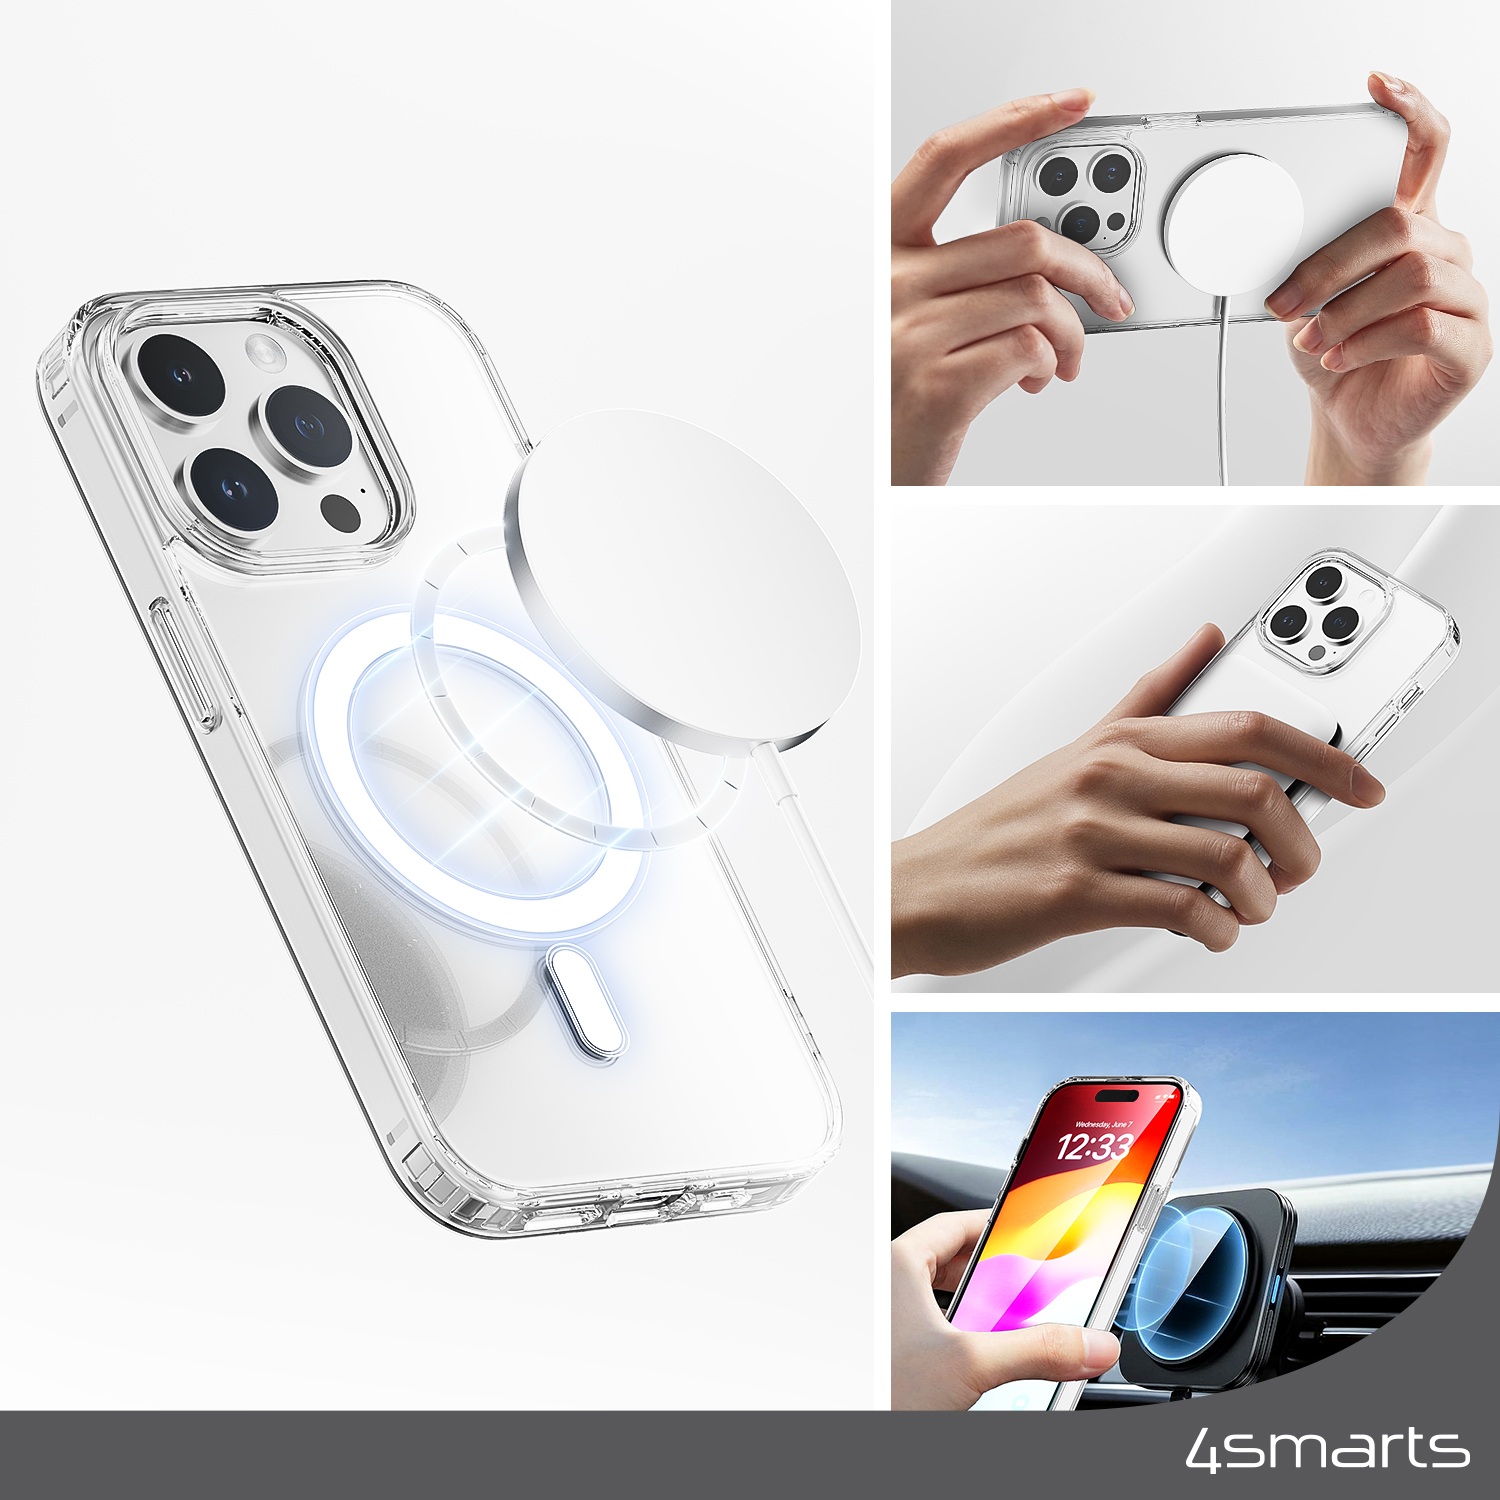 Das 4smarts 3in1 Premium Starter Set für das Apple iPhone 15 Pro bietet eine MagSafe-kompatible Handyhülle mit exakt ausgerichteten, integrierten Magneten, die sich perfekt an das Smartphone anpassen und so eine einfache Befestigung und schnelleres kabelloses Laden gewährleisten.